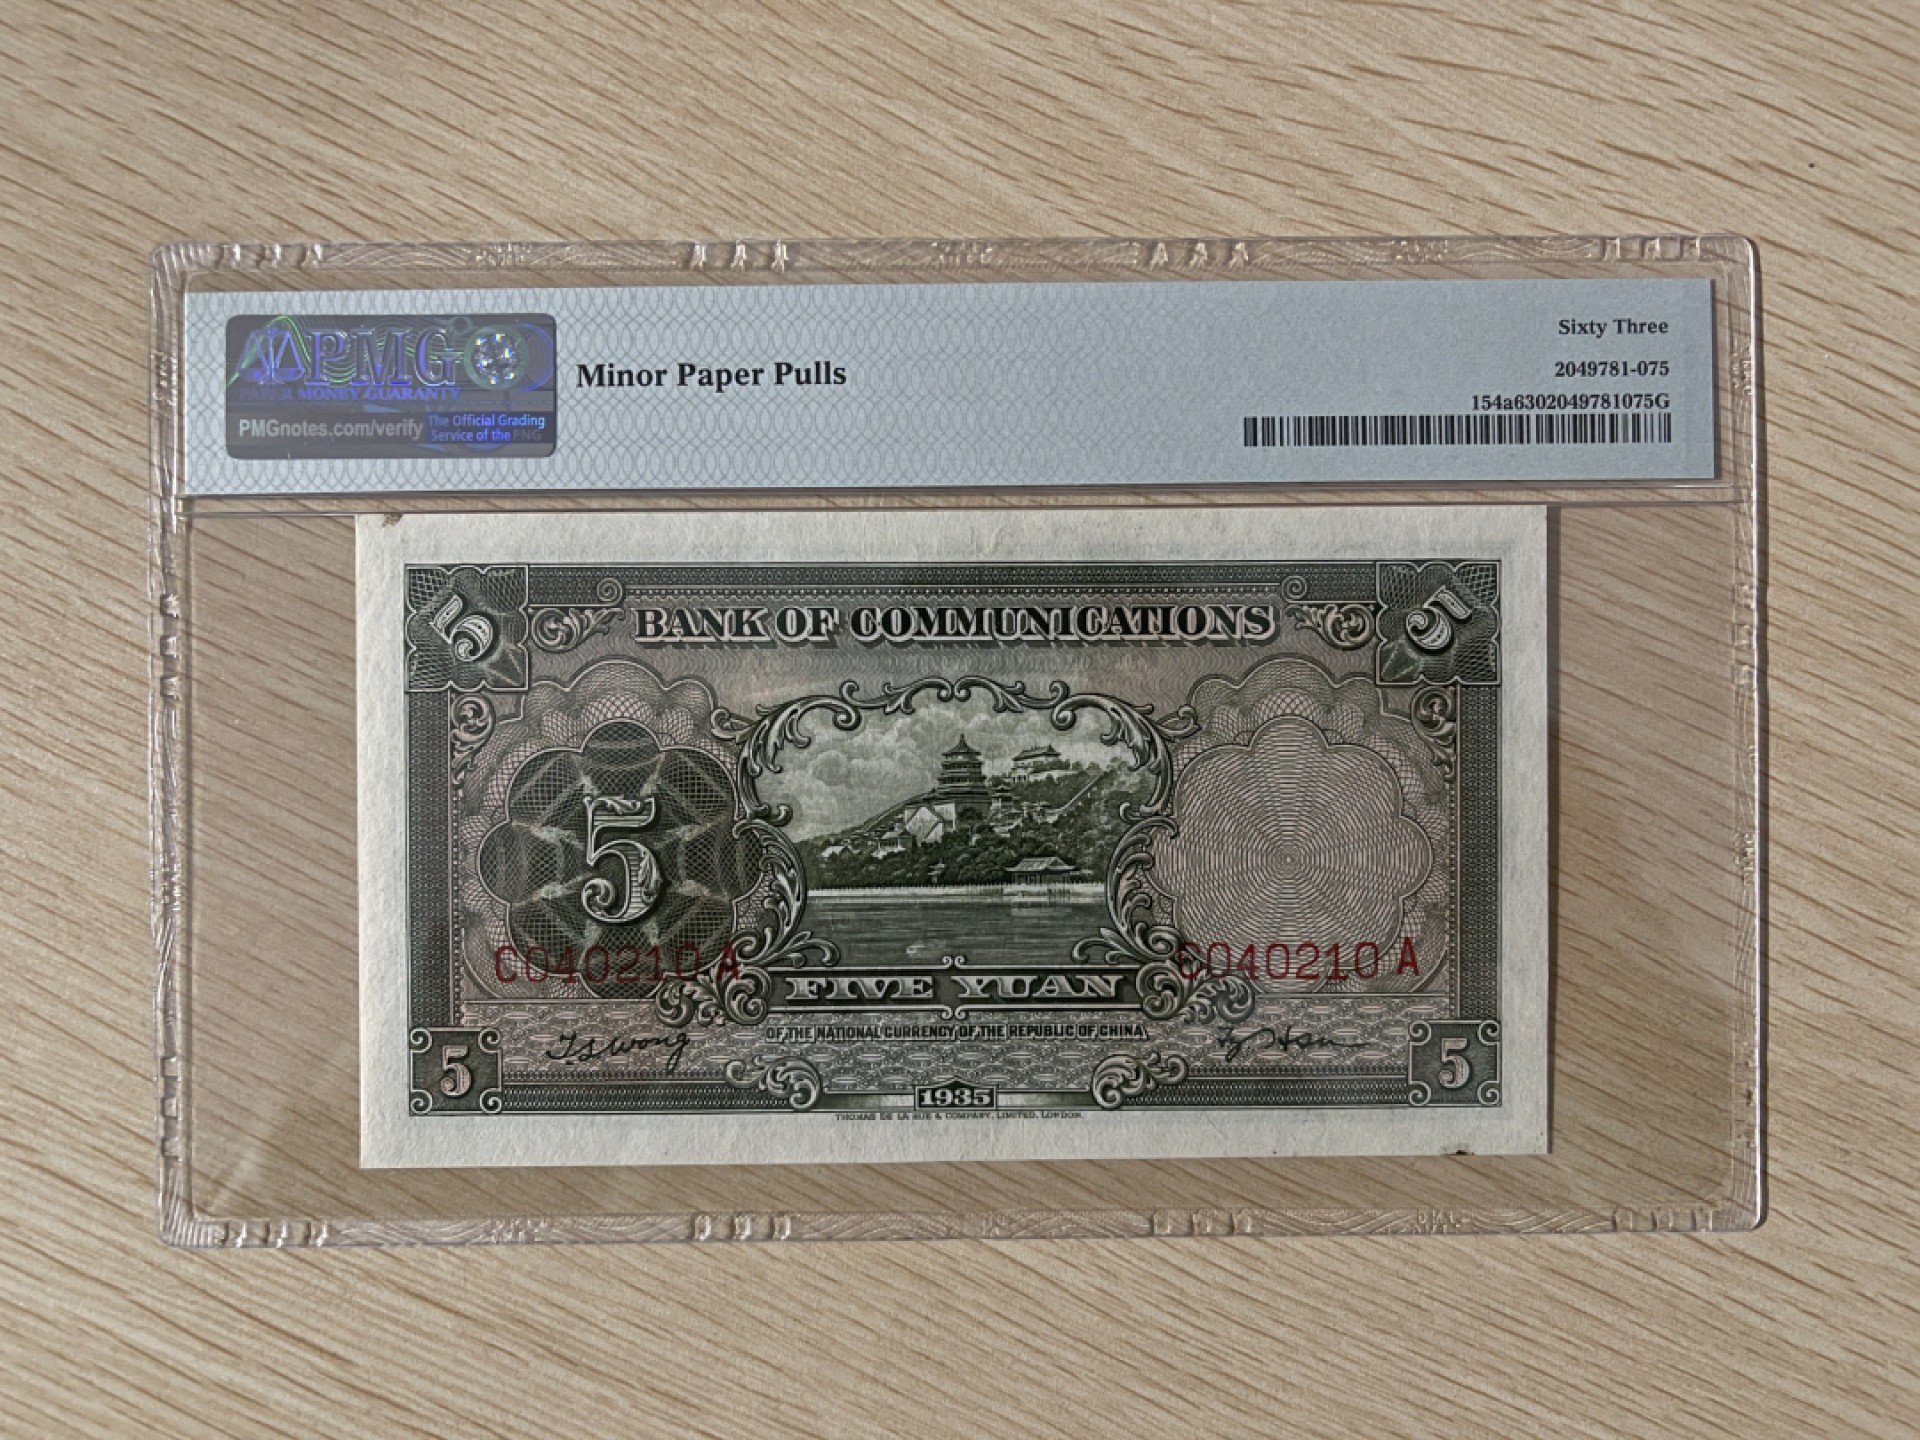 民国纸币民国24年(1935年) 交通银行5元- oc34ngu1 - oc34ngu1 - 麦稀奇